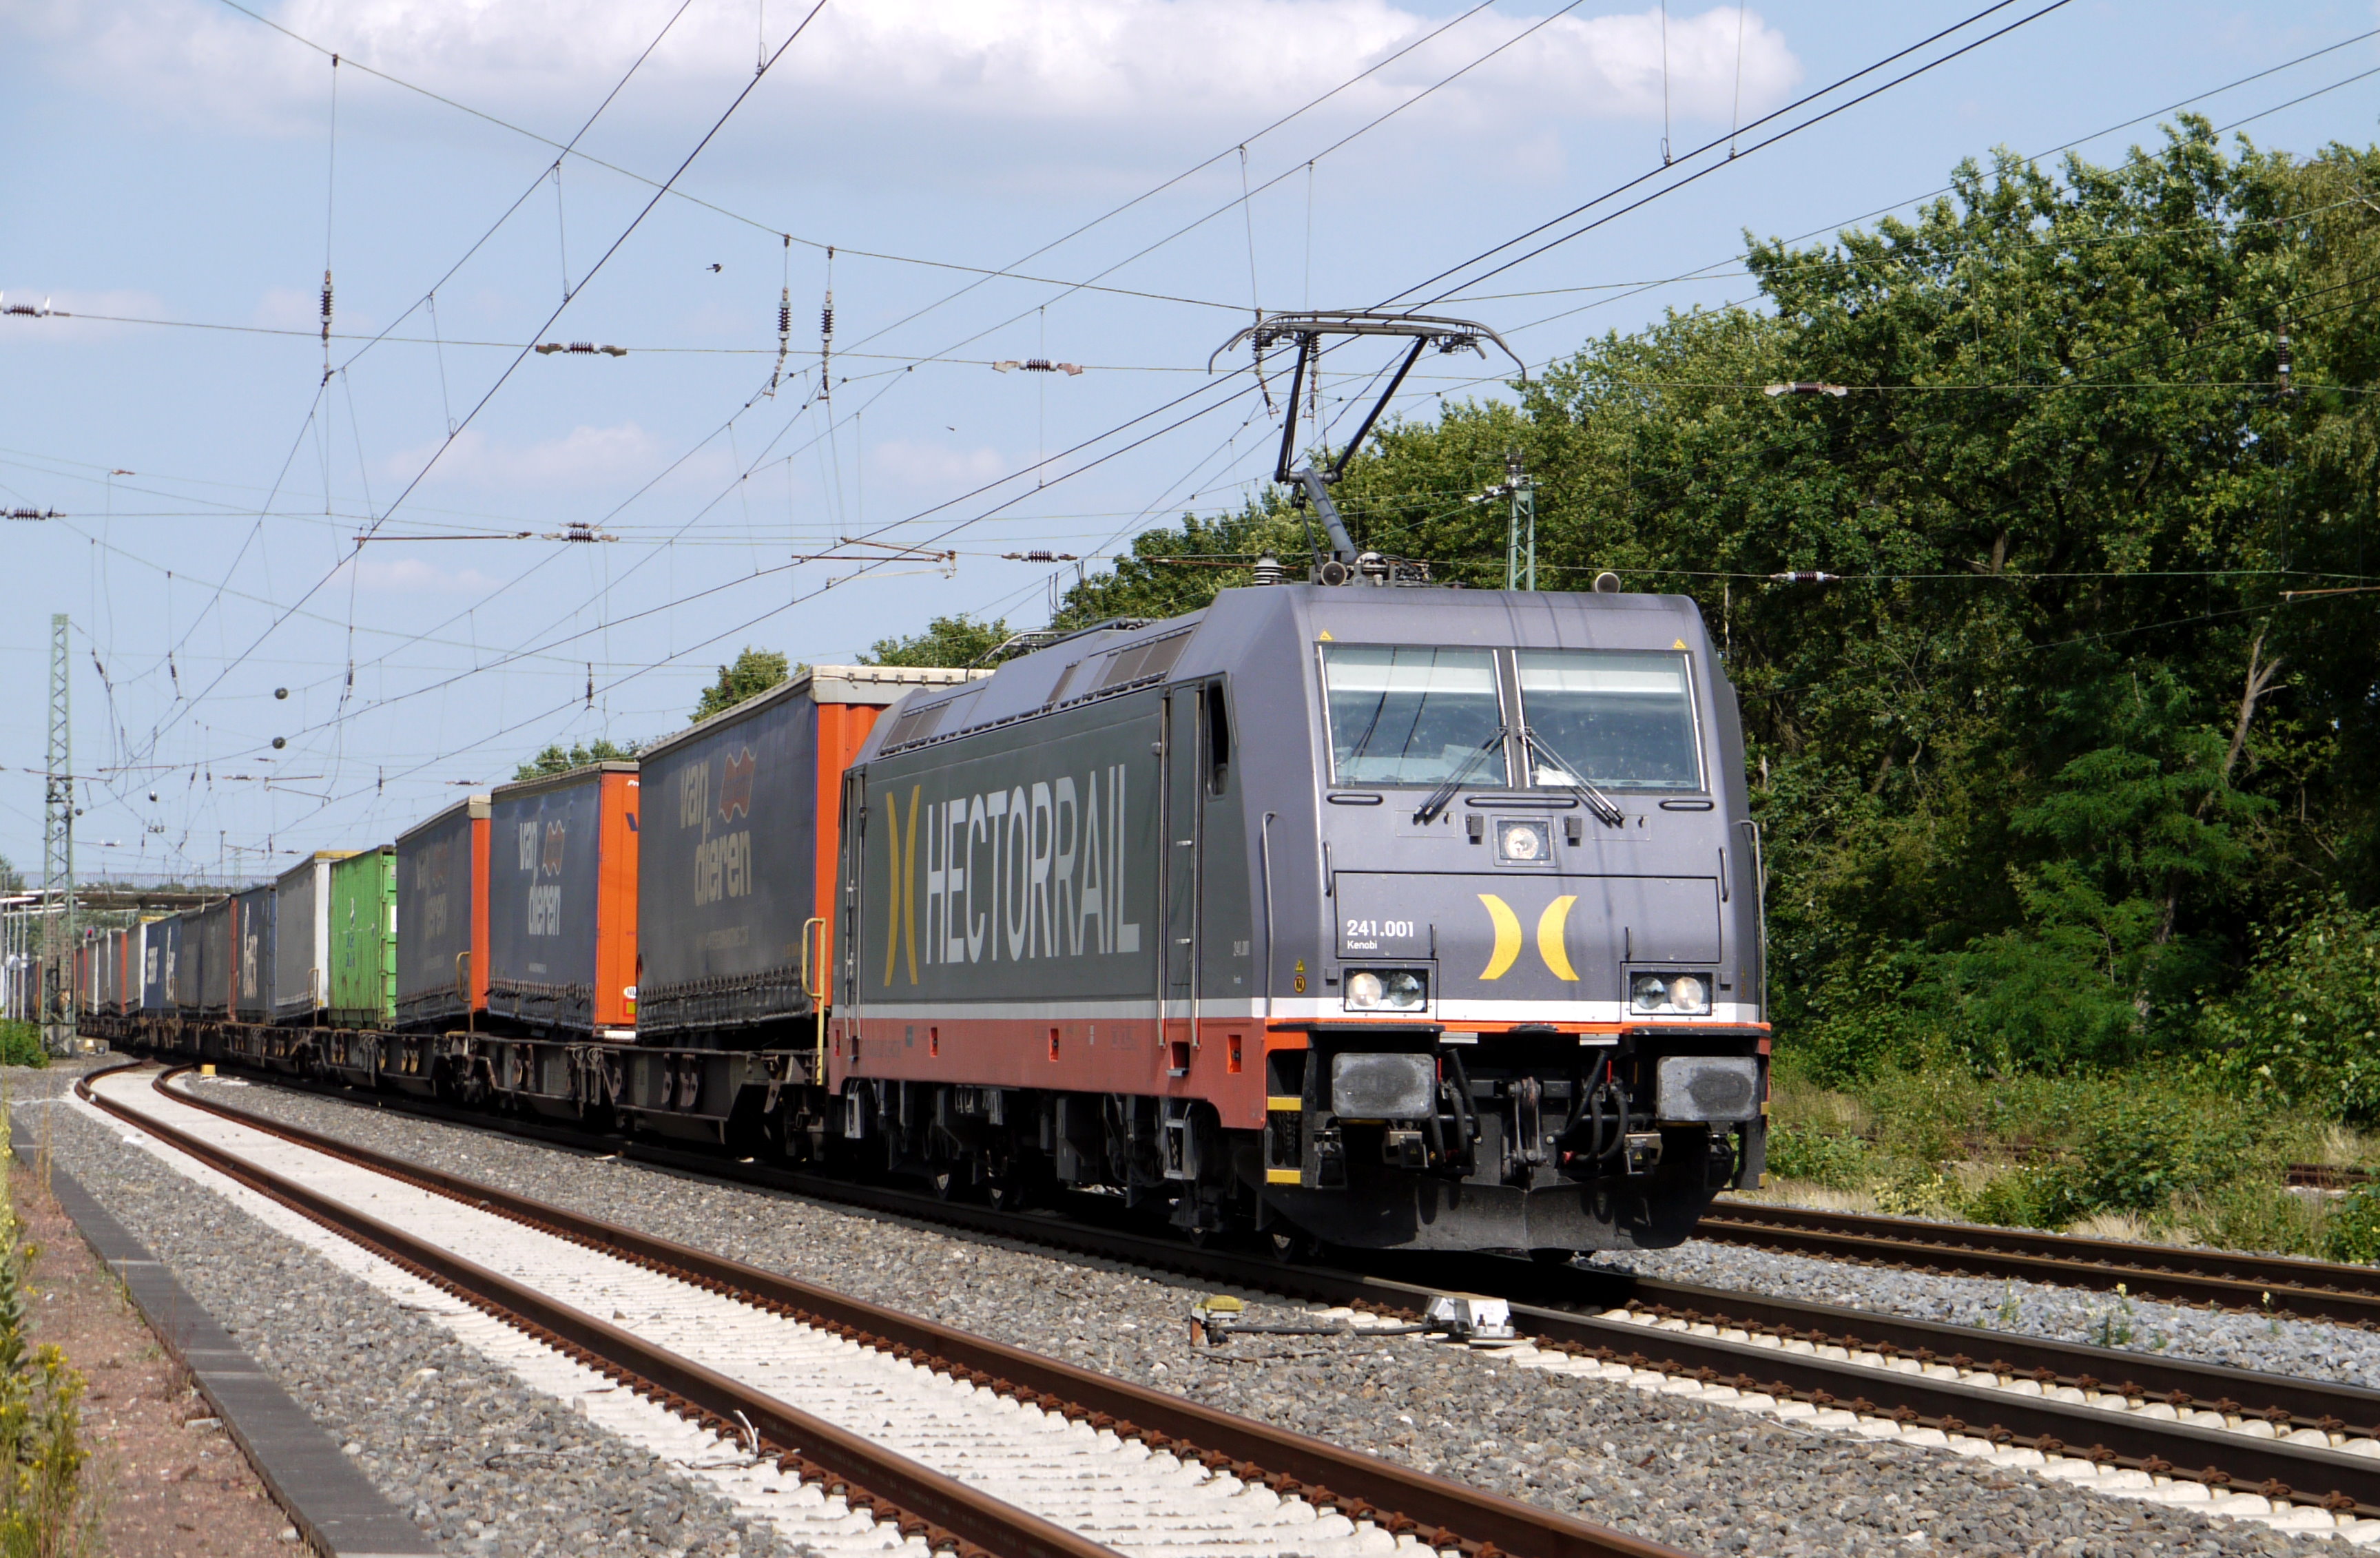 Symbolbild: Güterzug mit LKW-Anhänger auf Güterwagen. (Foto: © Erich Westendarp / pixelio.de)